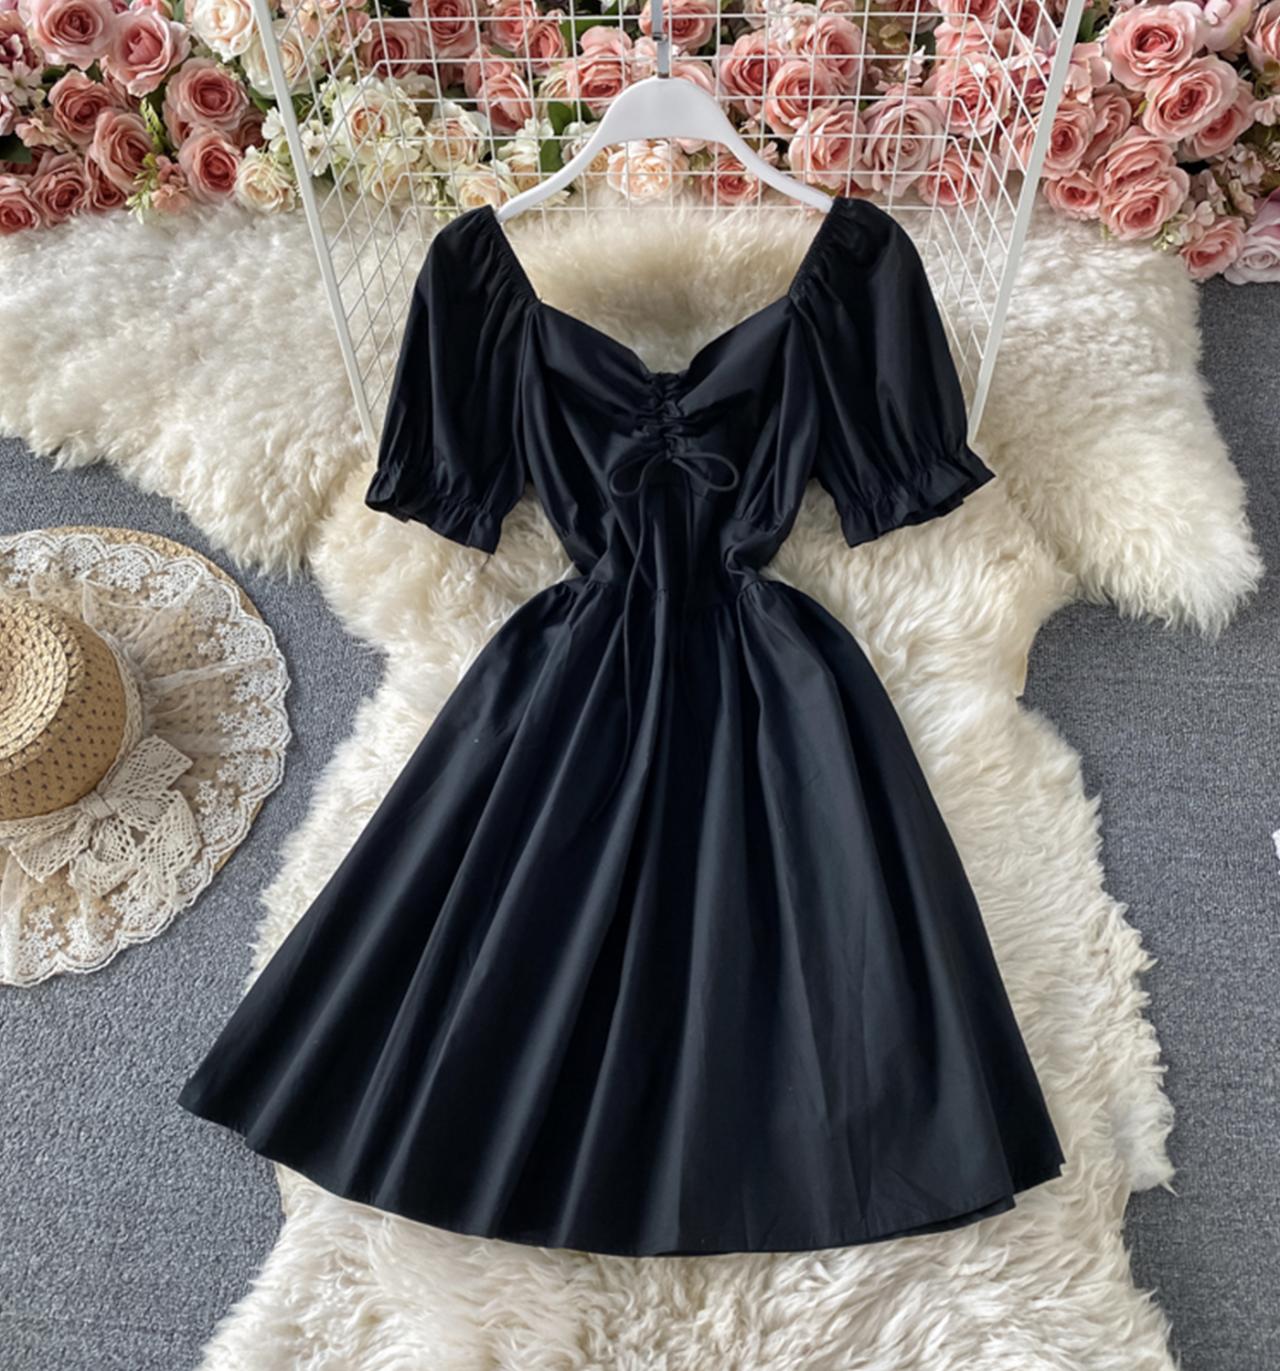 Black A Line Short Dress Party Dress